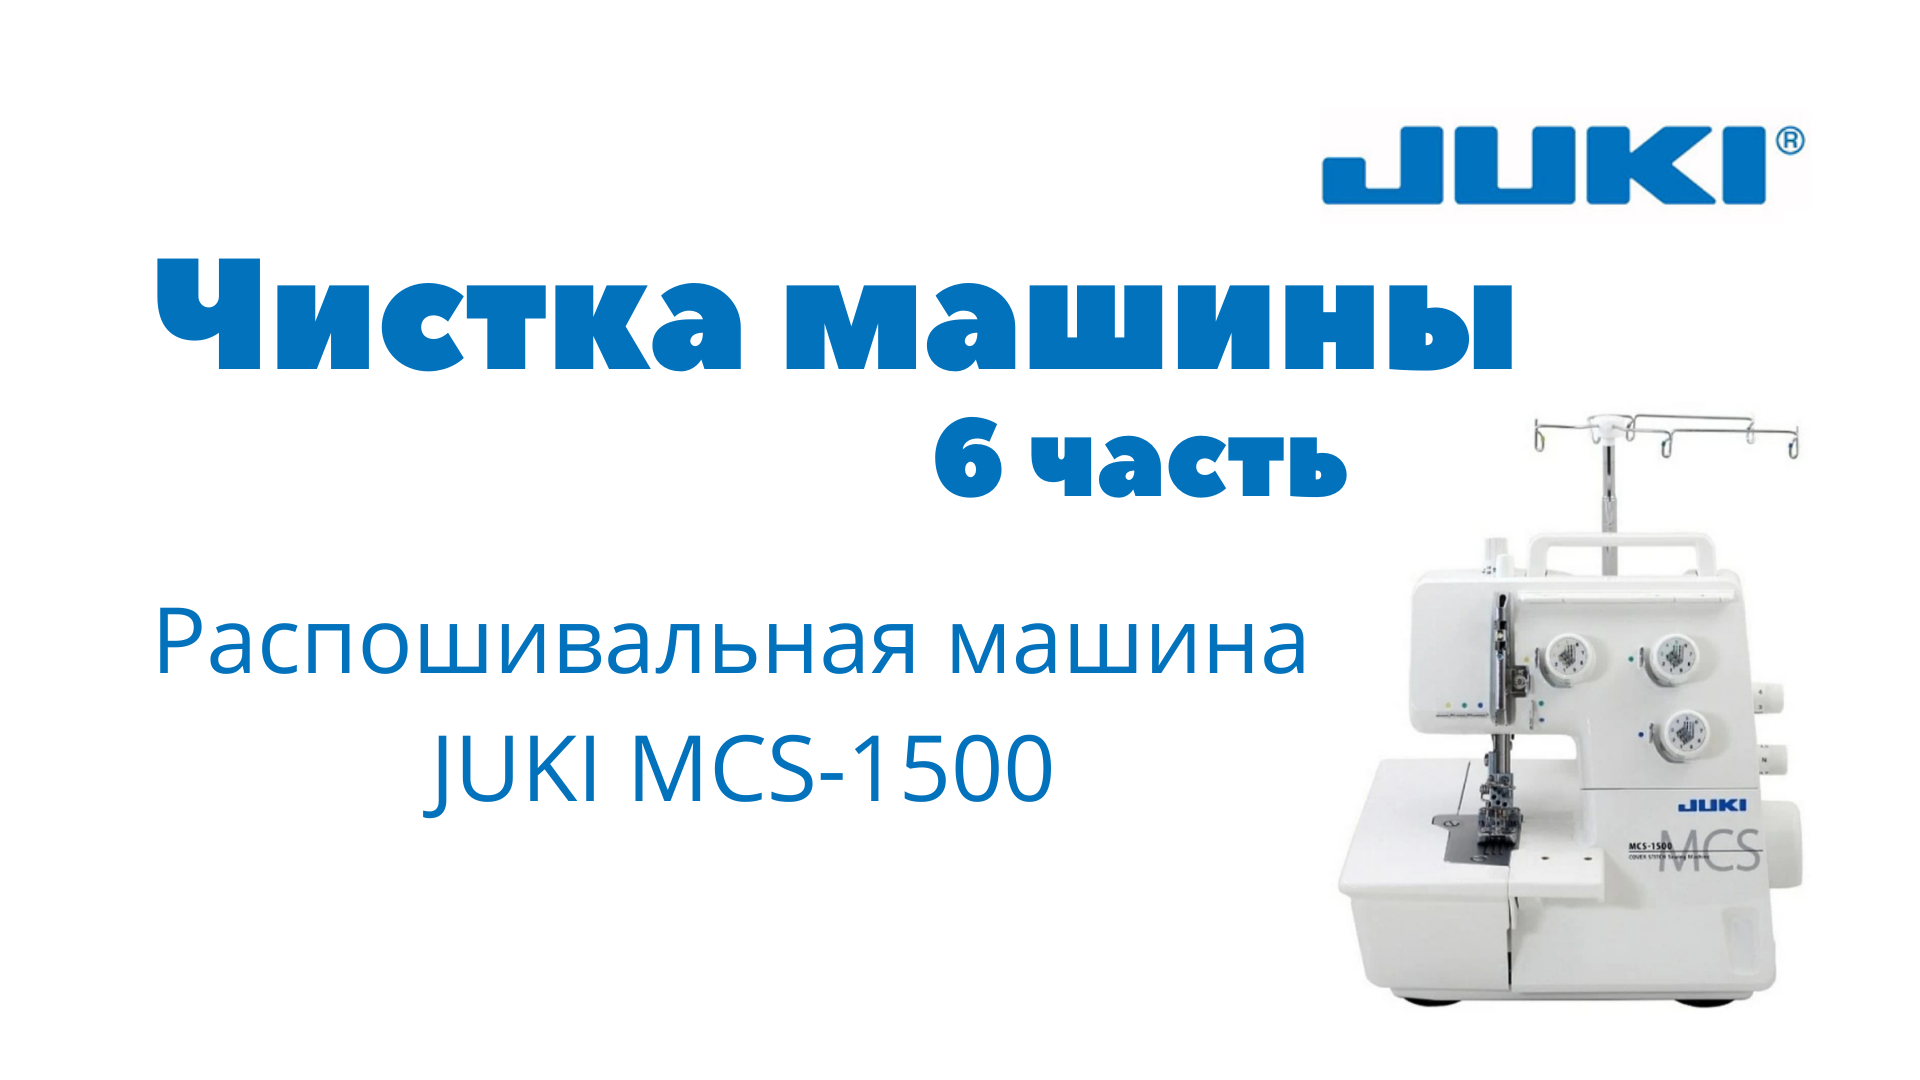 Швейная машинка жук. Распошивальная машина Juki MCS-1500. Лампа распошивальная машина Juki MCS-1500. Комплектация швейной машинки Juki TL 2010. Заправка распошивальной машины Juki 1500.